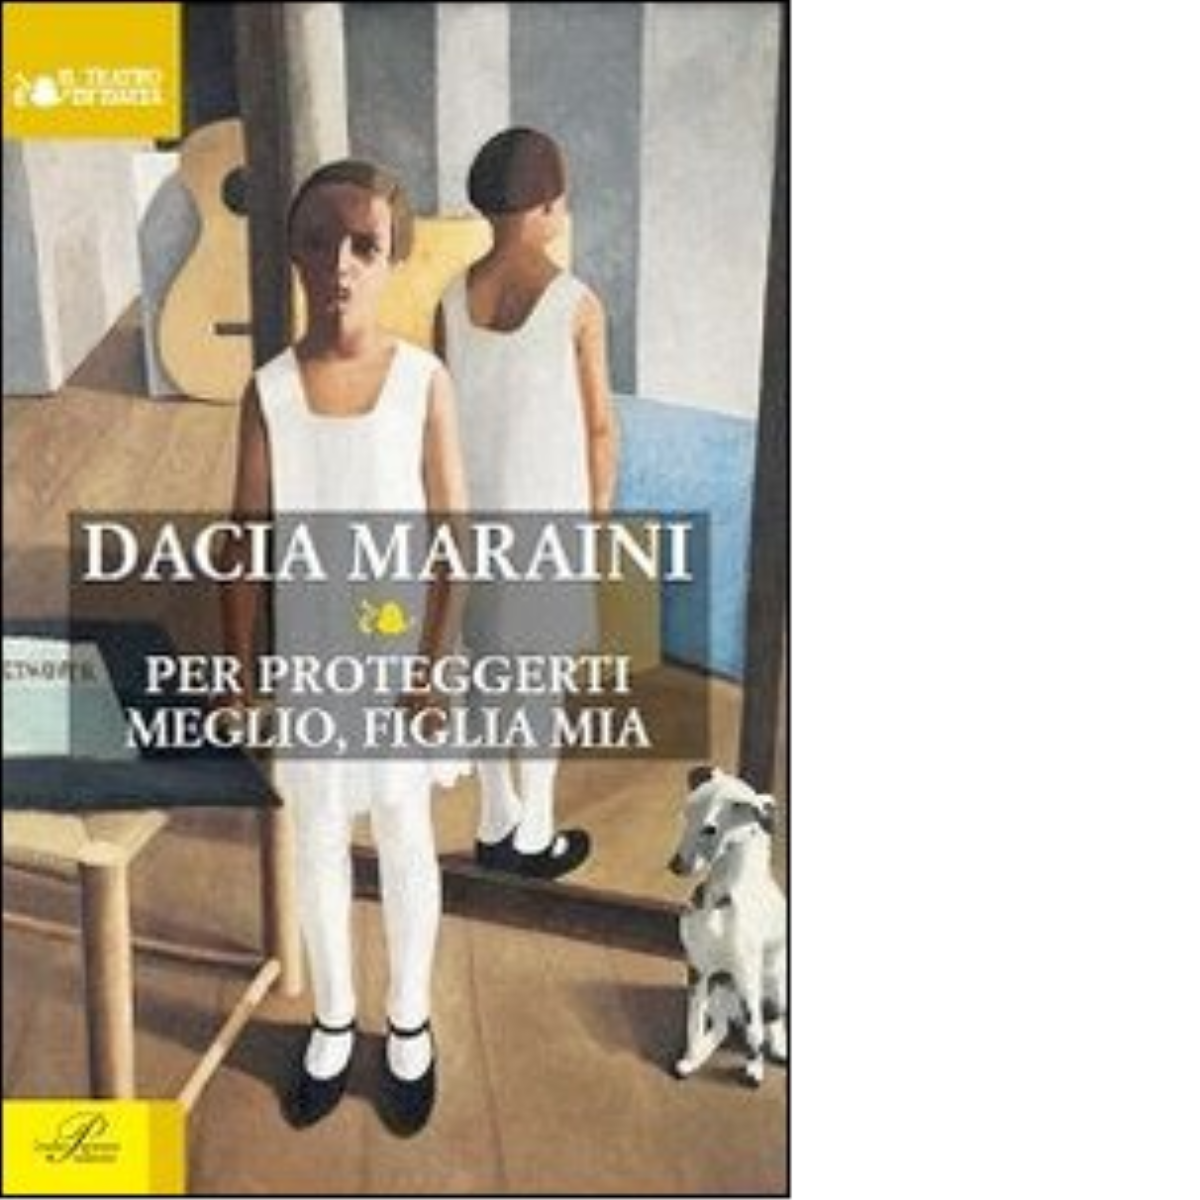 Per proteggerti meglio, figlia mia - Dacia Maraini - Perrone editore, 2014 libro usato